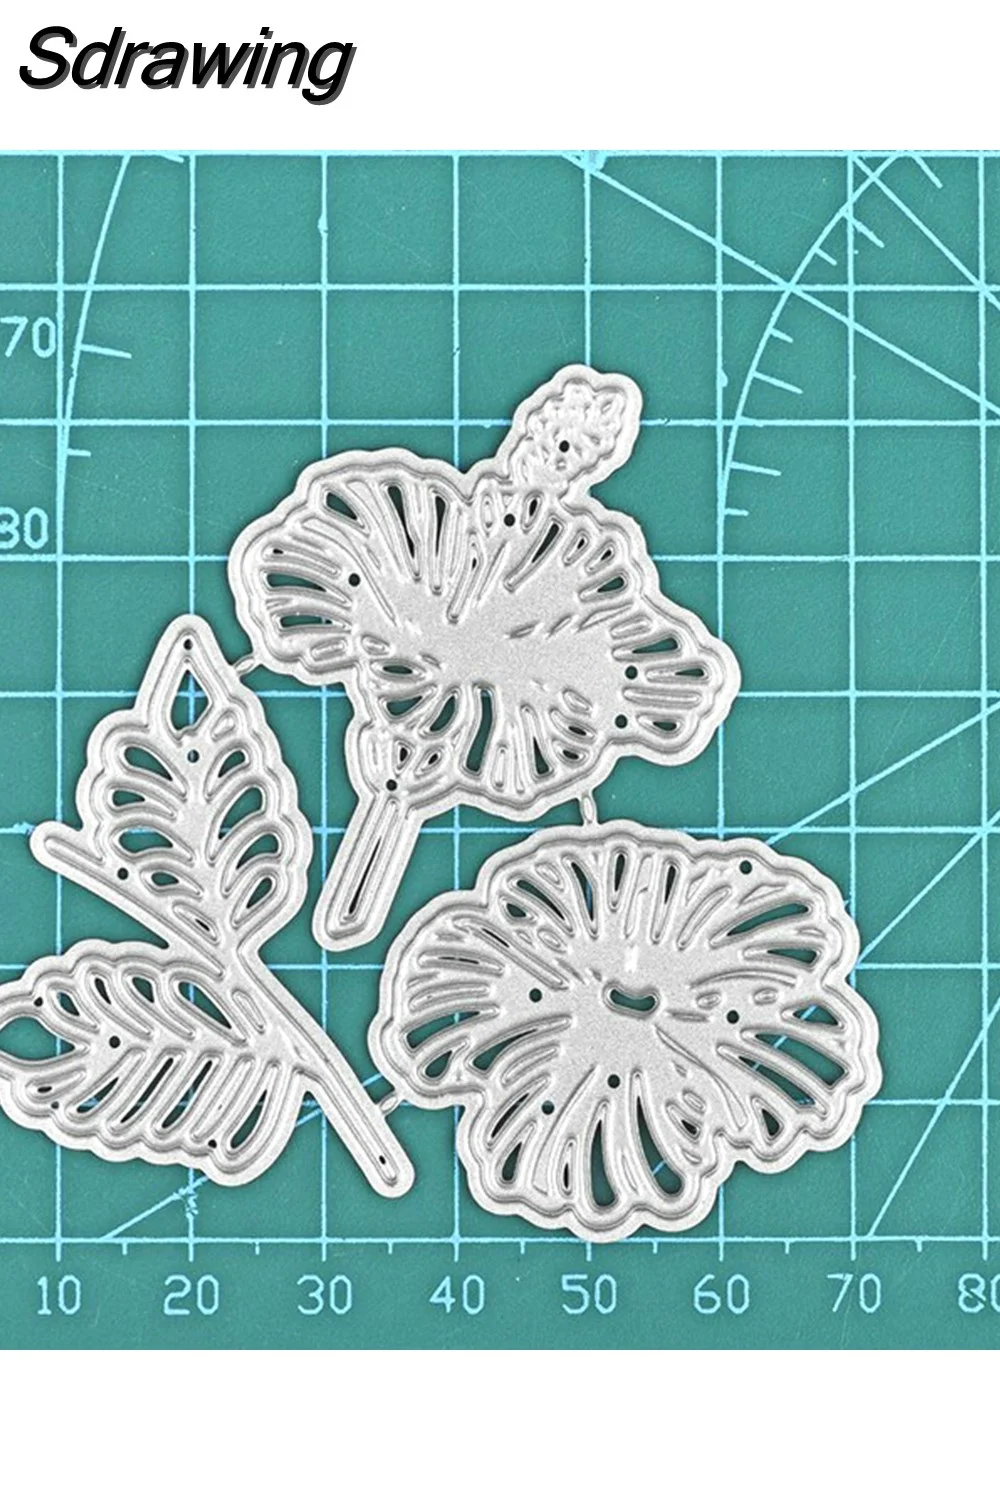 Sdrawing Leaf Series Metal Cutting Dies Flower Scrapbooking for Making Cards Decorative Embossing DIY Crafts Stencils Die Cuts